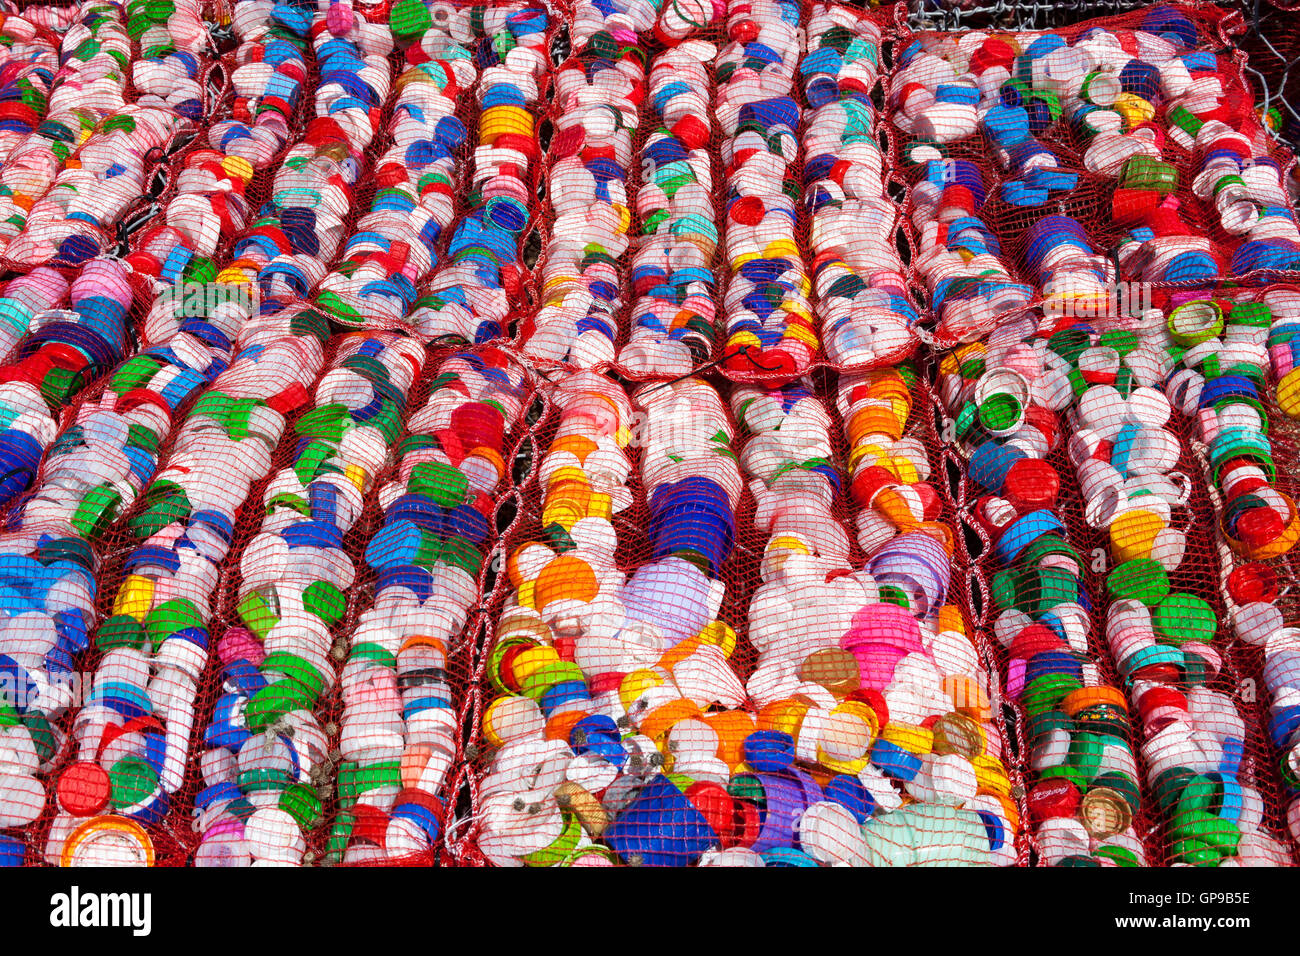 Bouteilles en plastique recyclées, Mozia, Sicile, Italie Banque D'Images